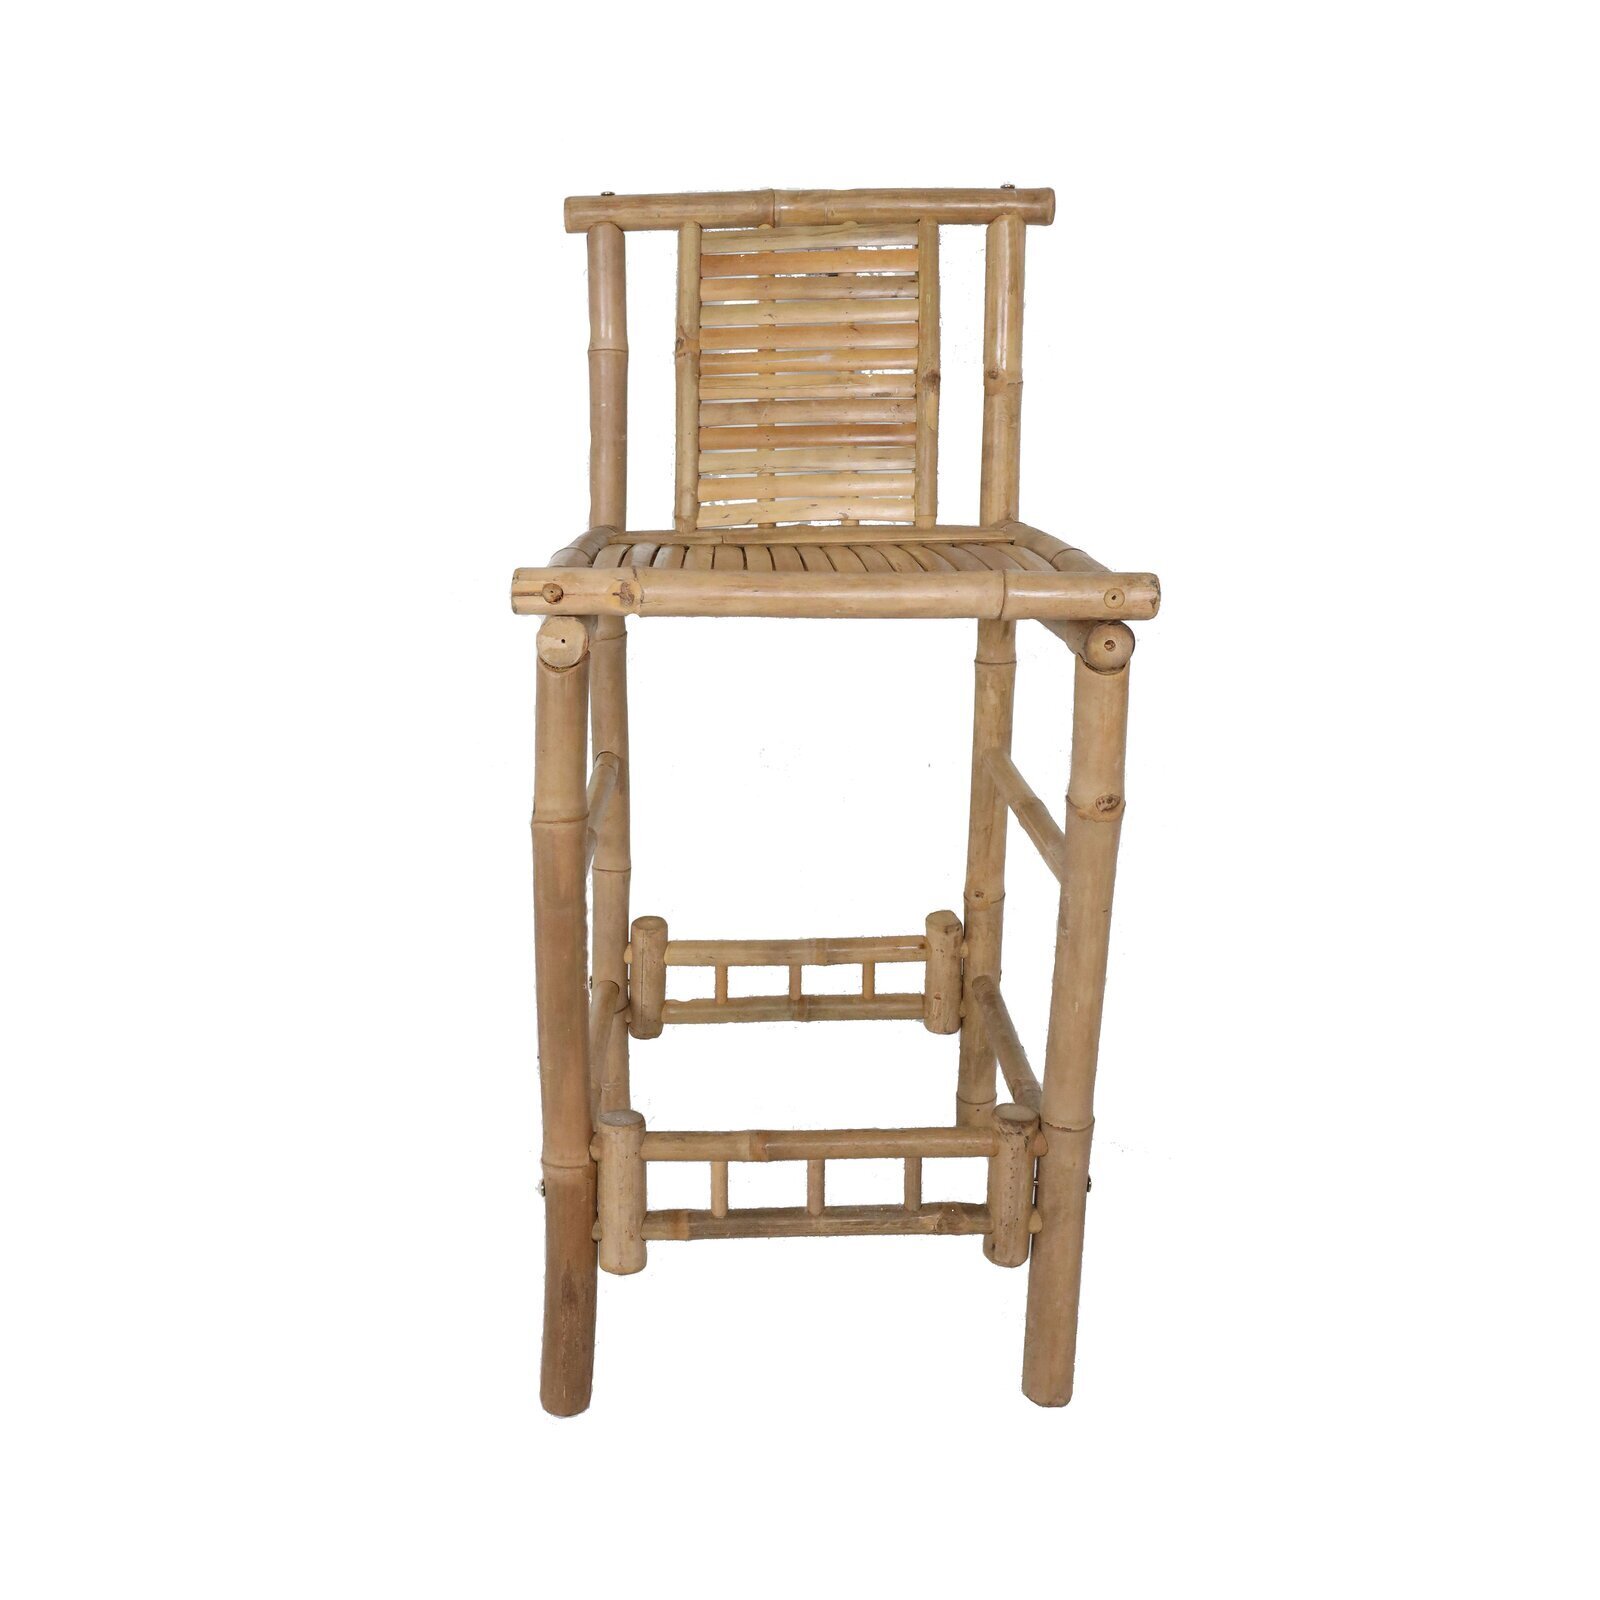 Natural looking bamboo stool